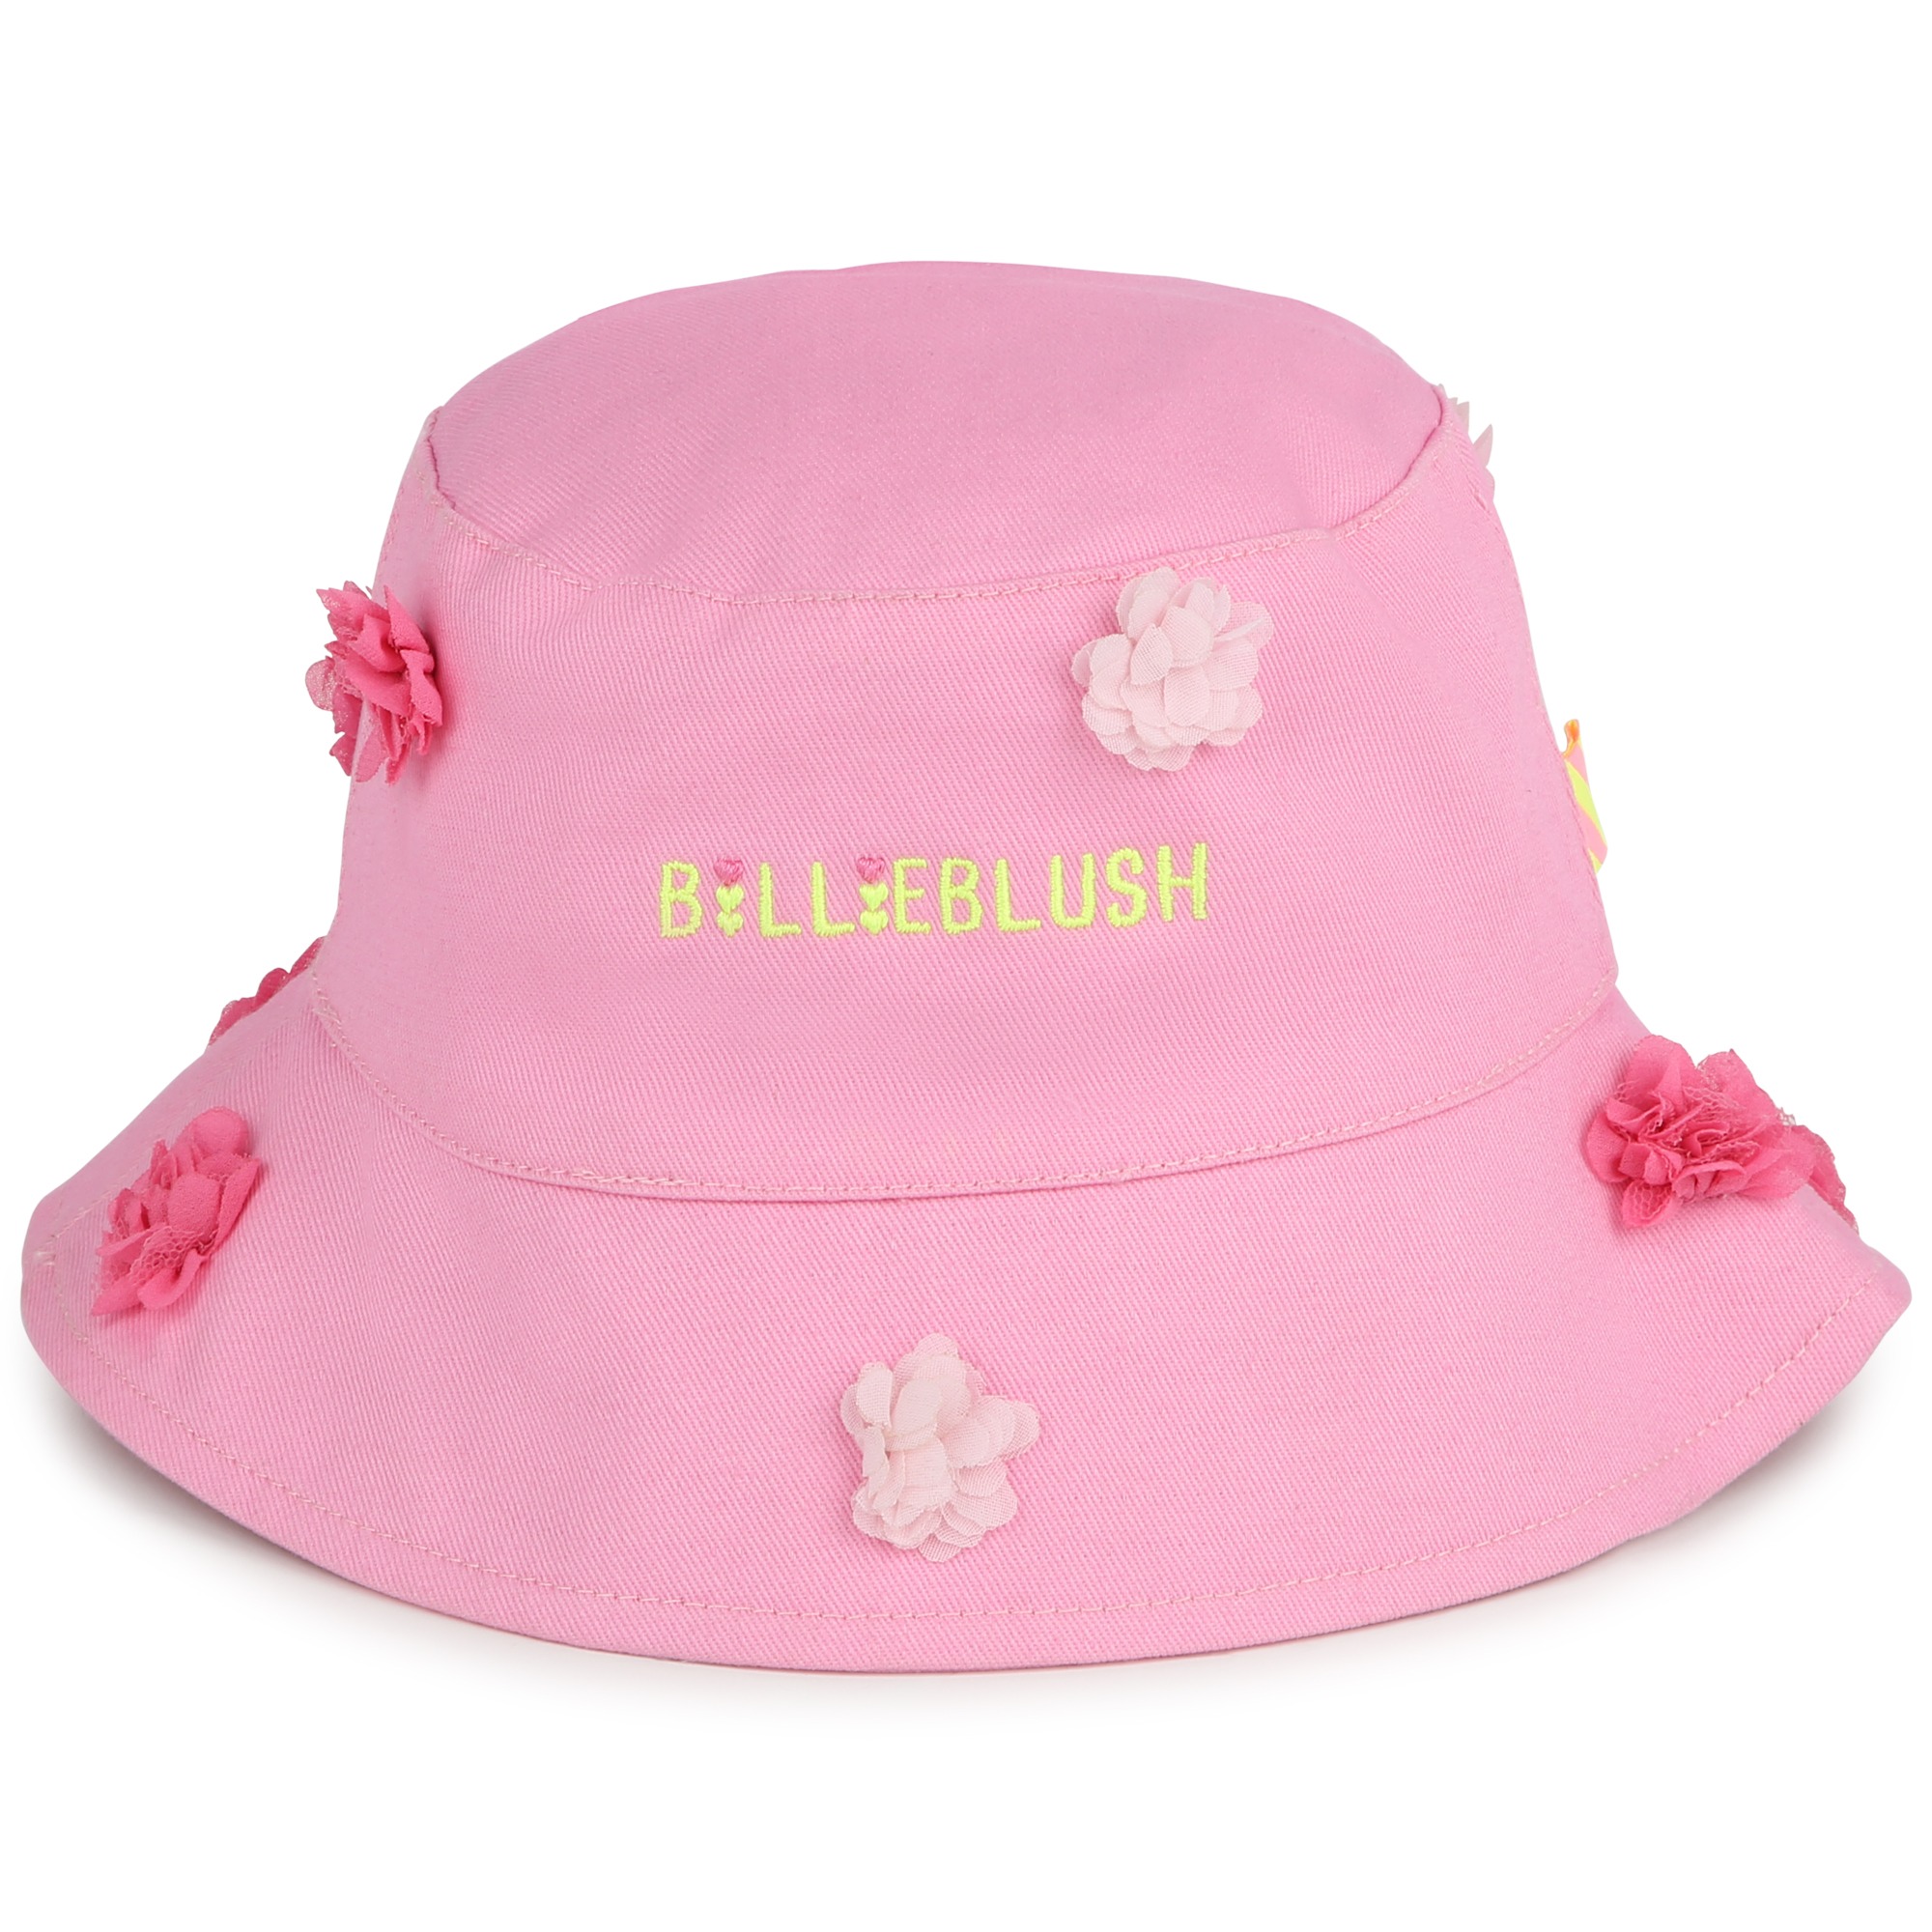 billieblush chapeau avec doublure en coton fille 44 rose